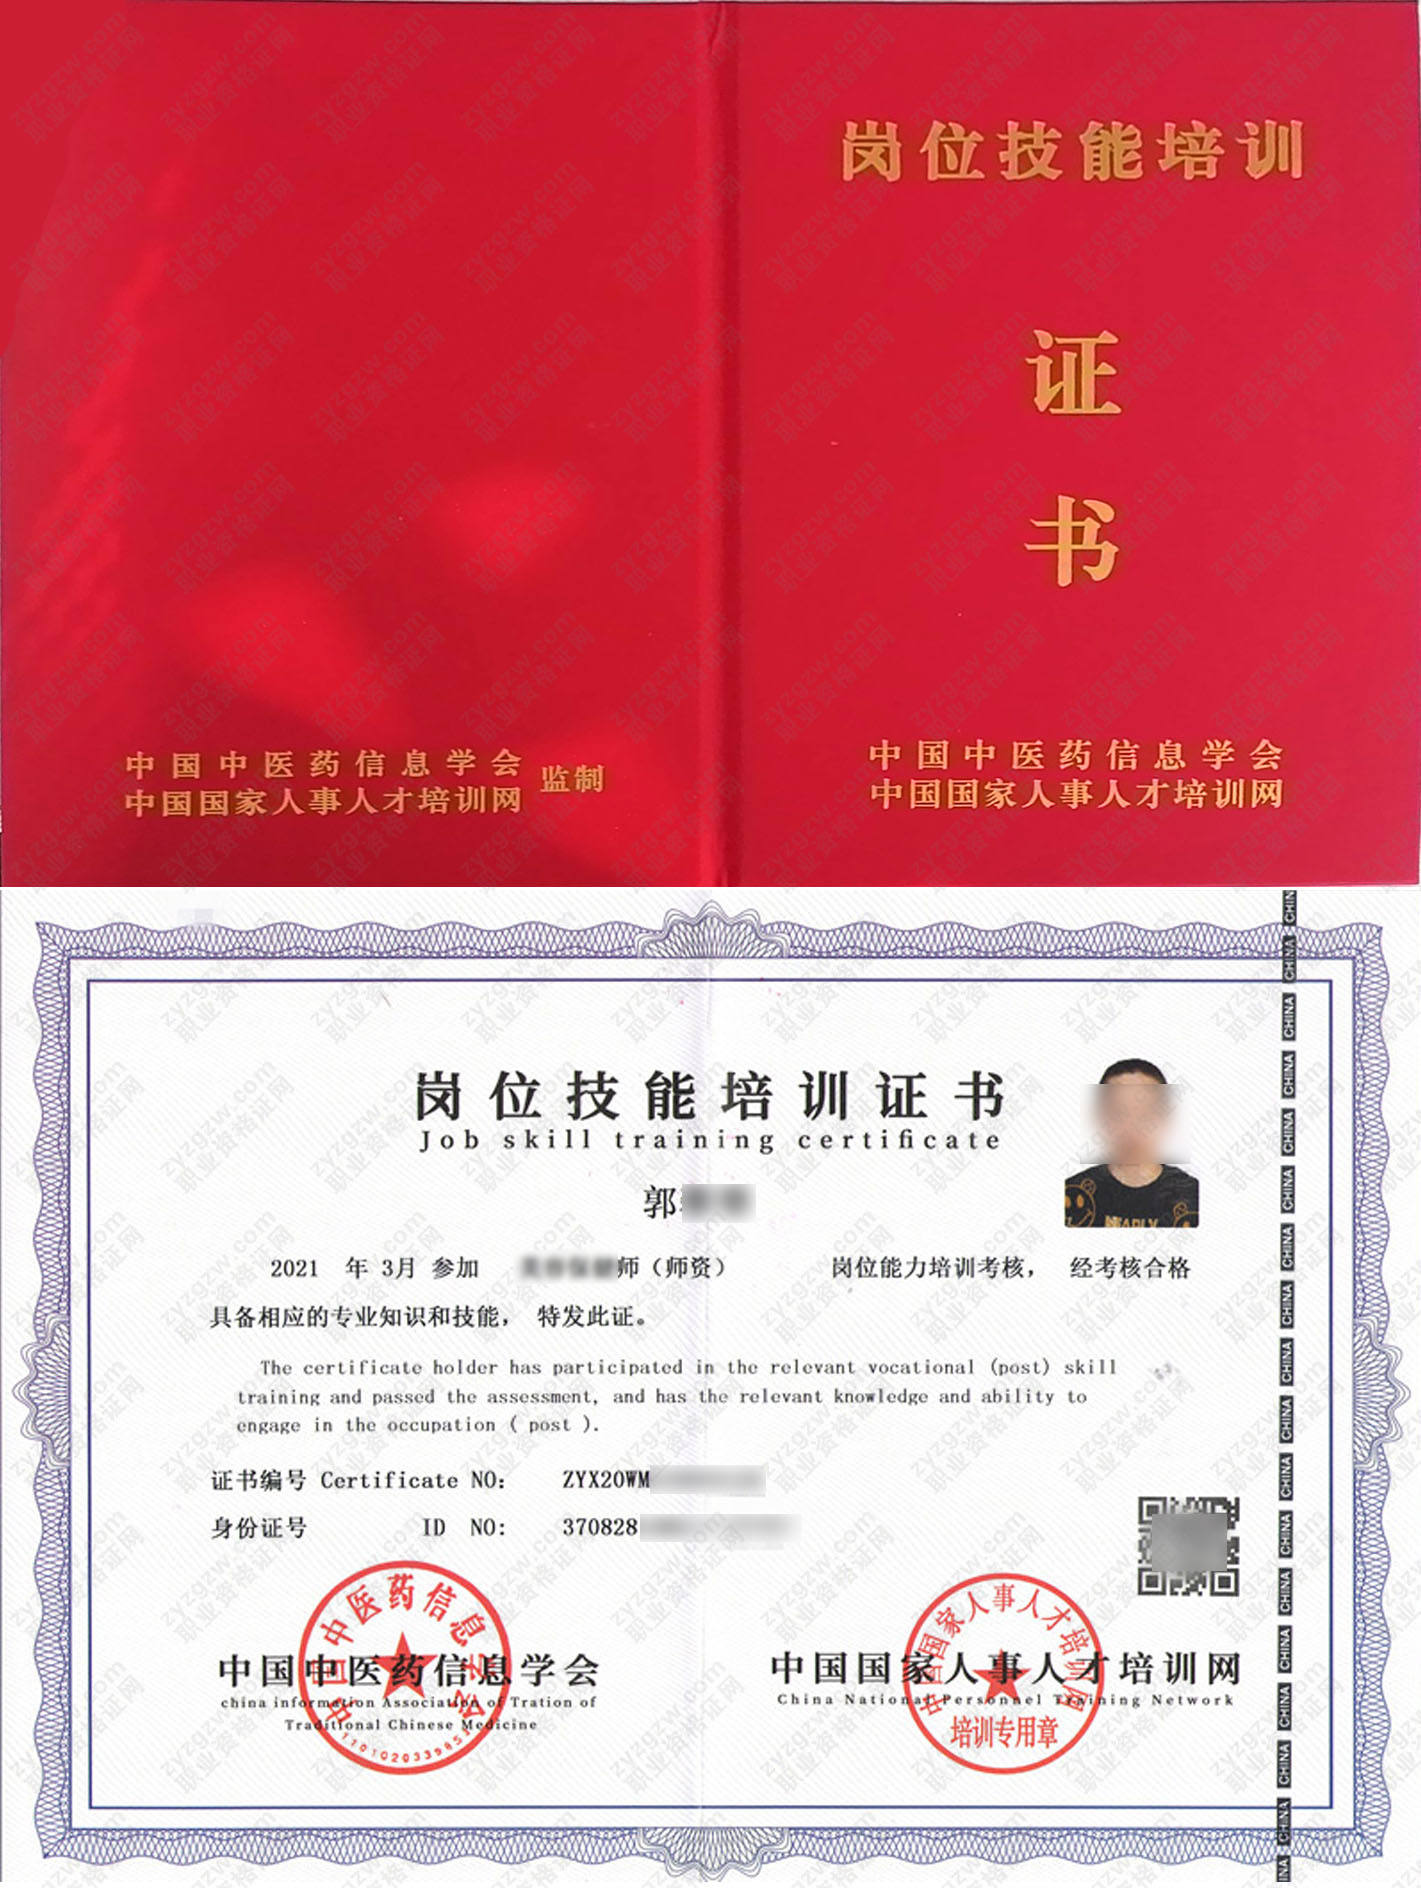 中国国家人事人才培训网 卫生检验师 岗位技能培训证书